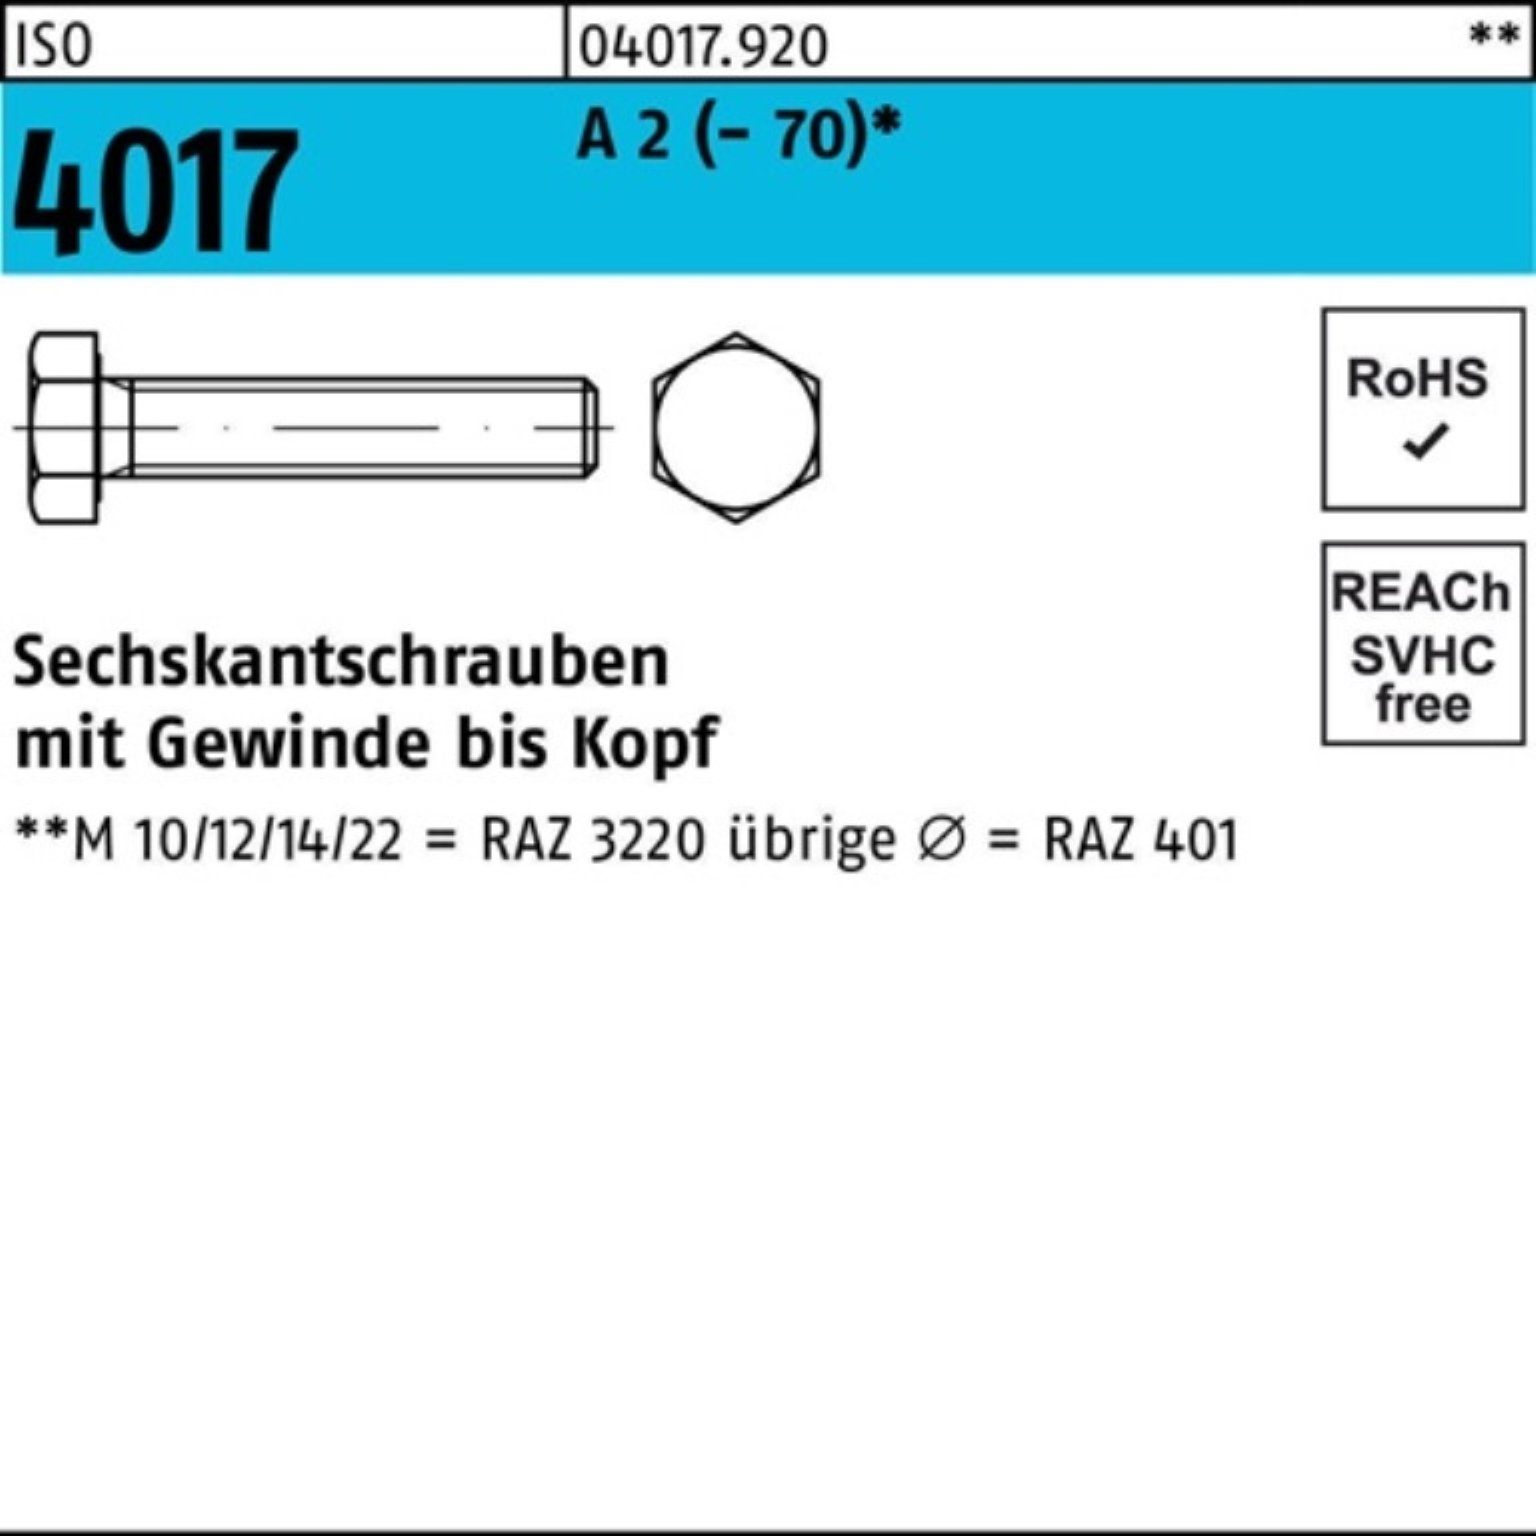 Bufab Sechskantschraube 100er Pack Sechskantschraube ISO 4017 VG M18x 40 A 2 (70) 25 Stück